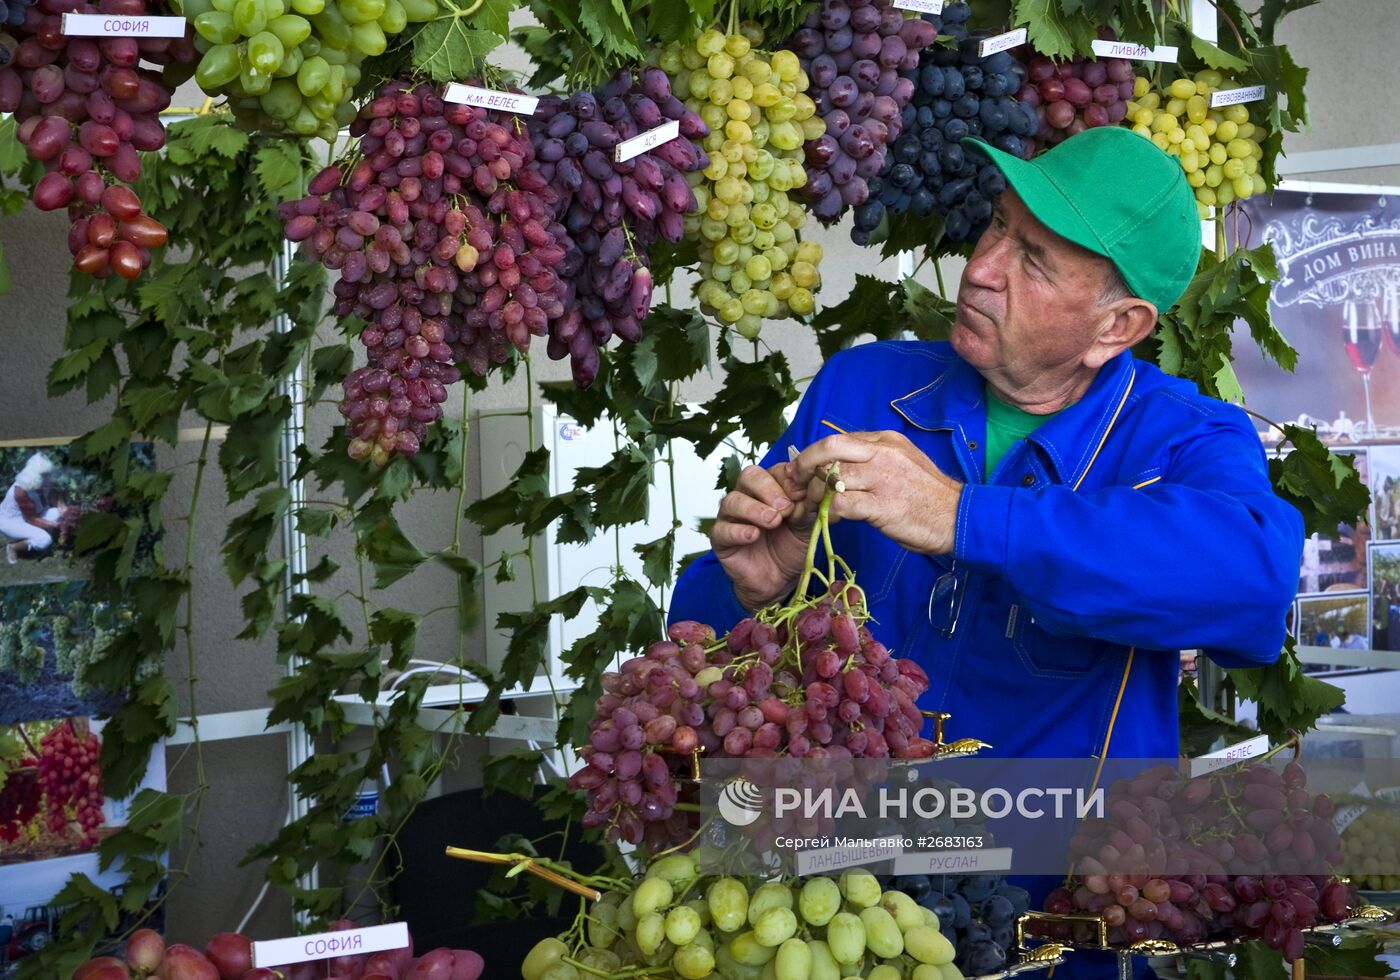 Фестиваль "Золотая гроздь винограда" в Крыму